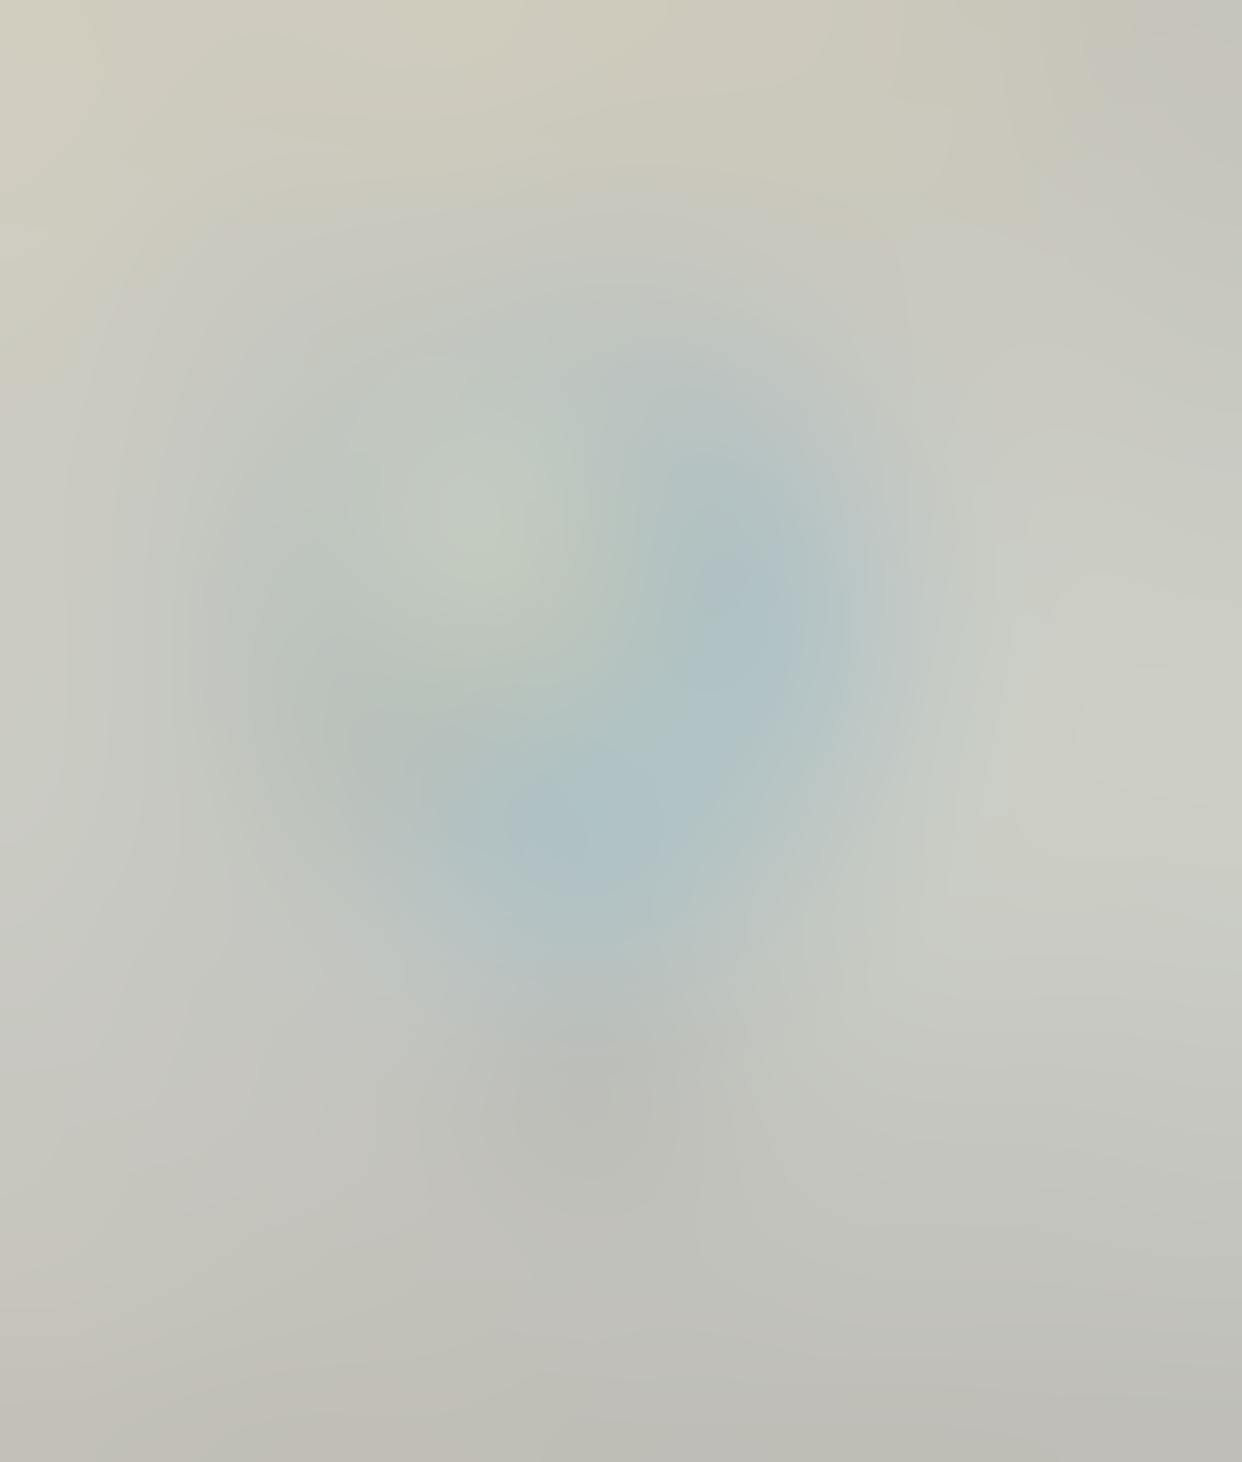 Александра Паперно/Натюрморт с глобусом из серии «Звездные карты»